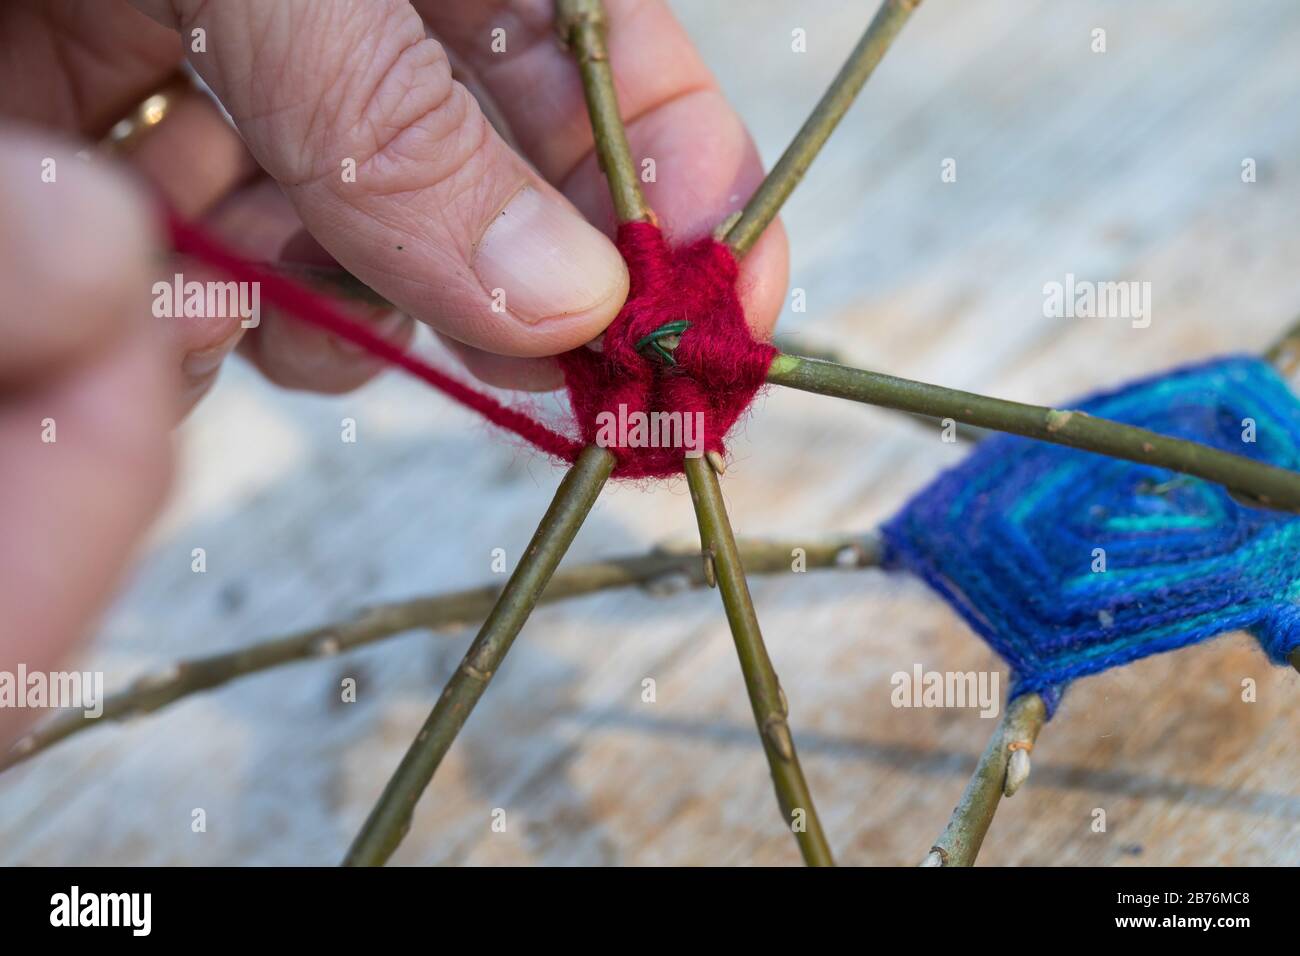 Faire un gardien de but avec une grosse boule avec des branches de saule, de la laine et du fil, série photo 5/10, Allemagne Banque D'Images